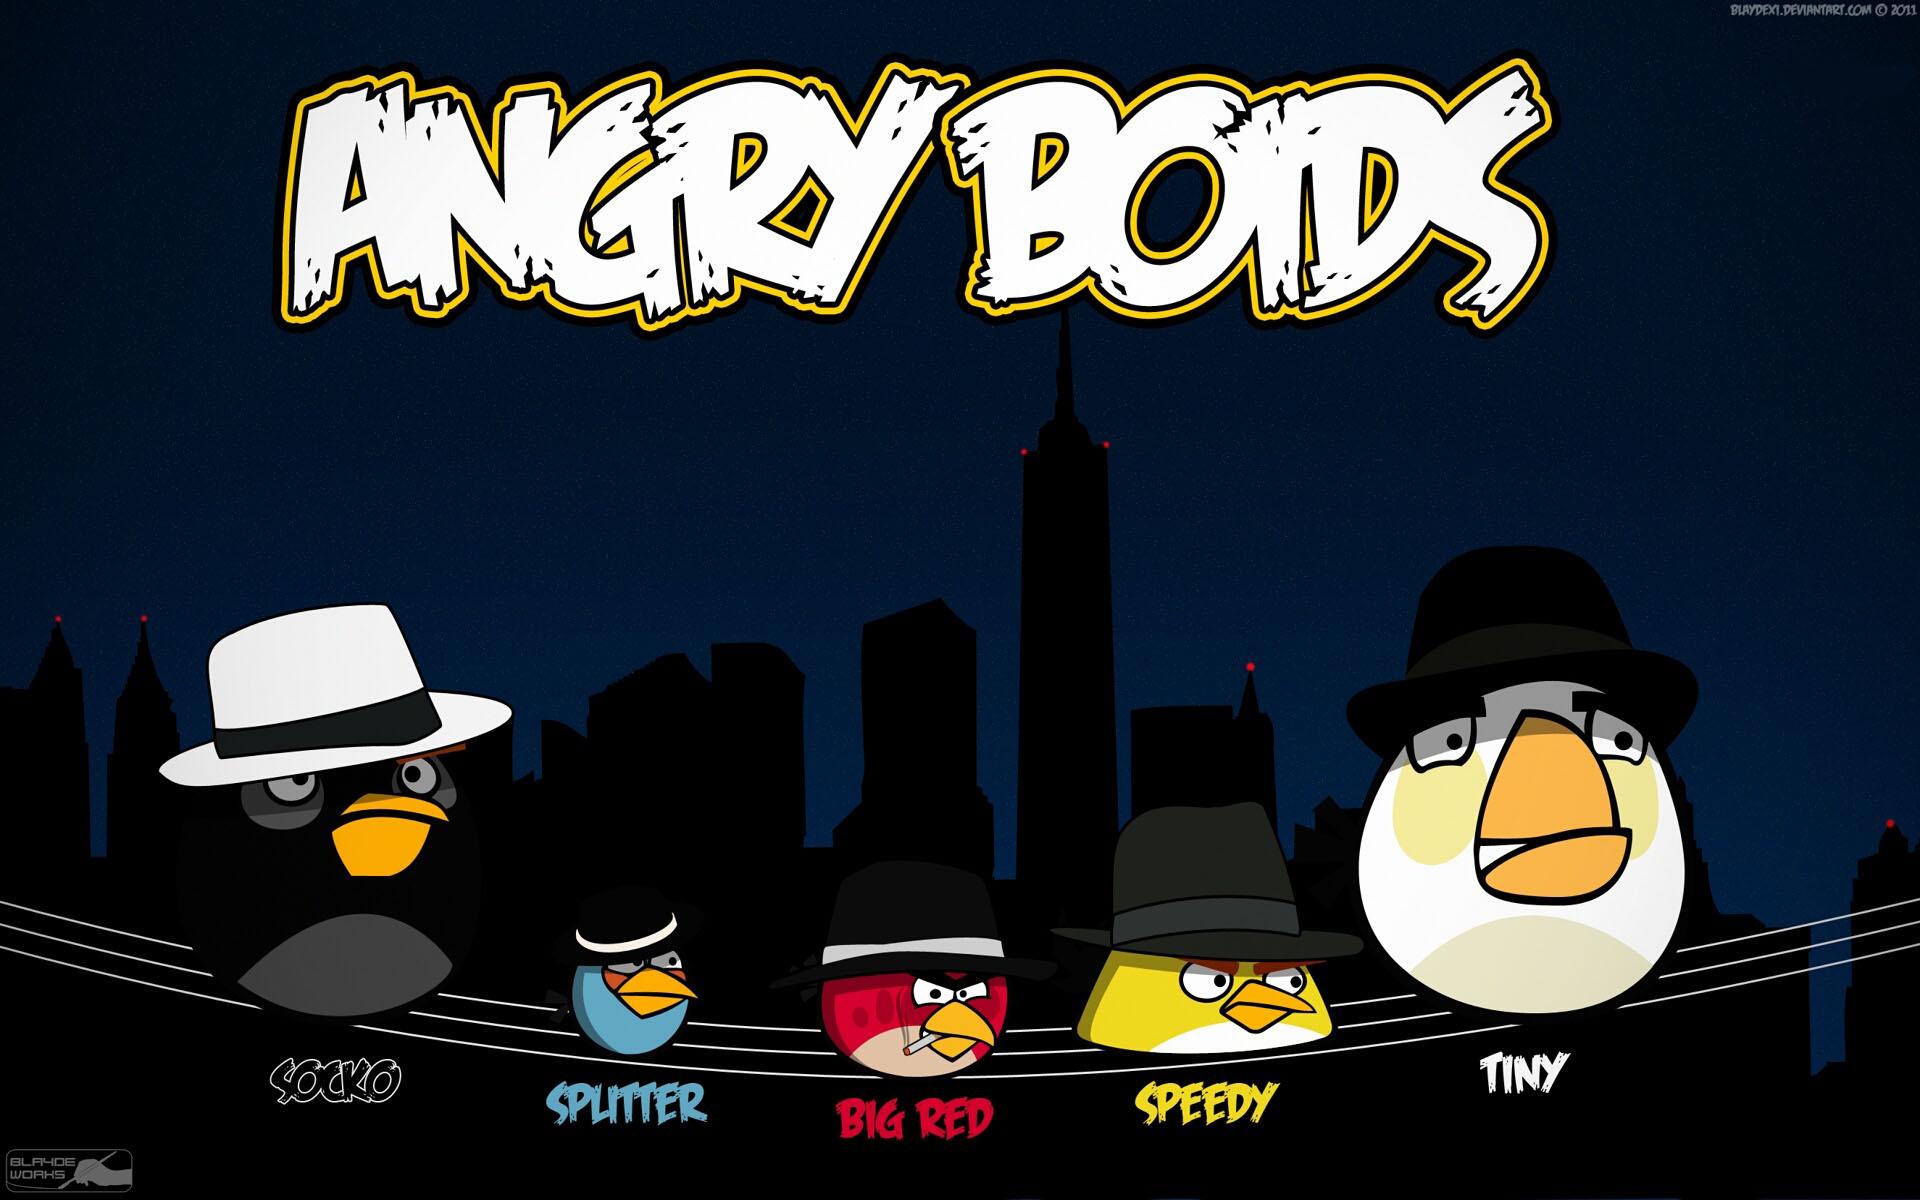 AngryBirdsangrybirds3441366019201200.jpg